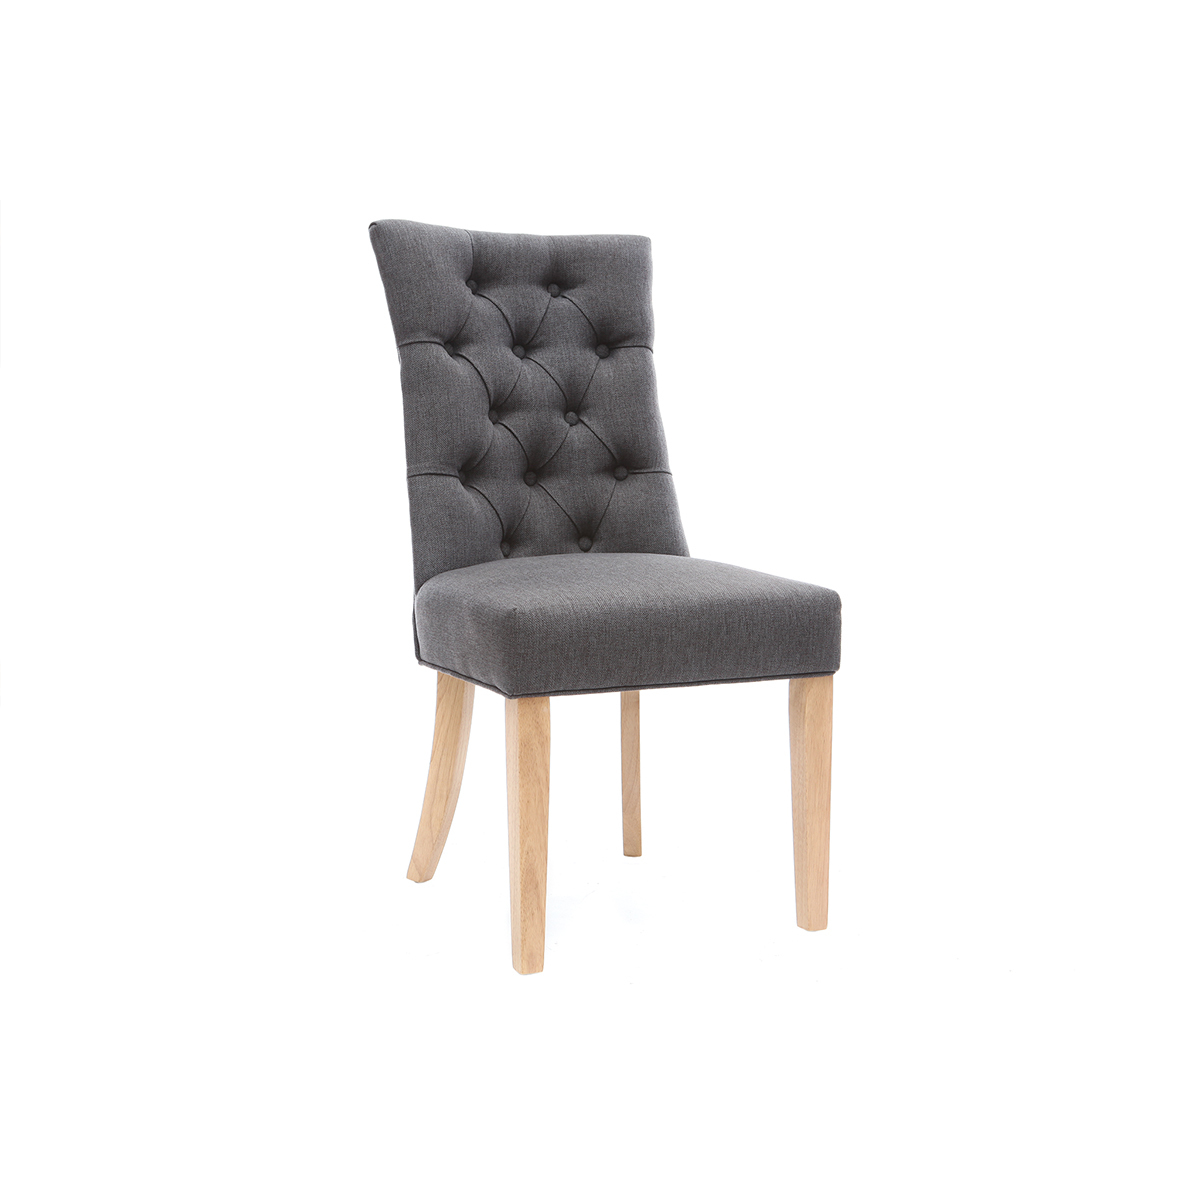 Chaise classique en tissu gris foncé et bois clair VOLTAIRE vue1